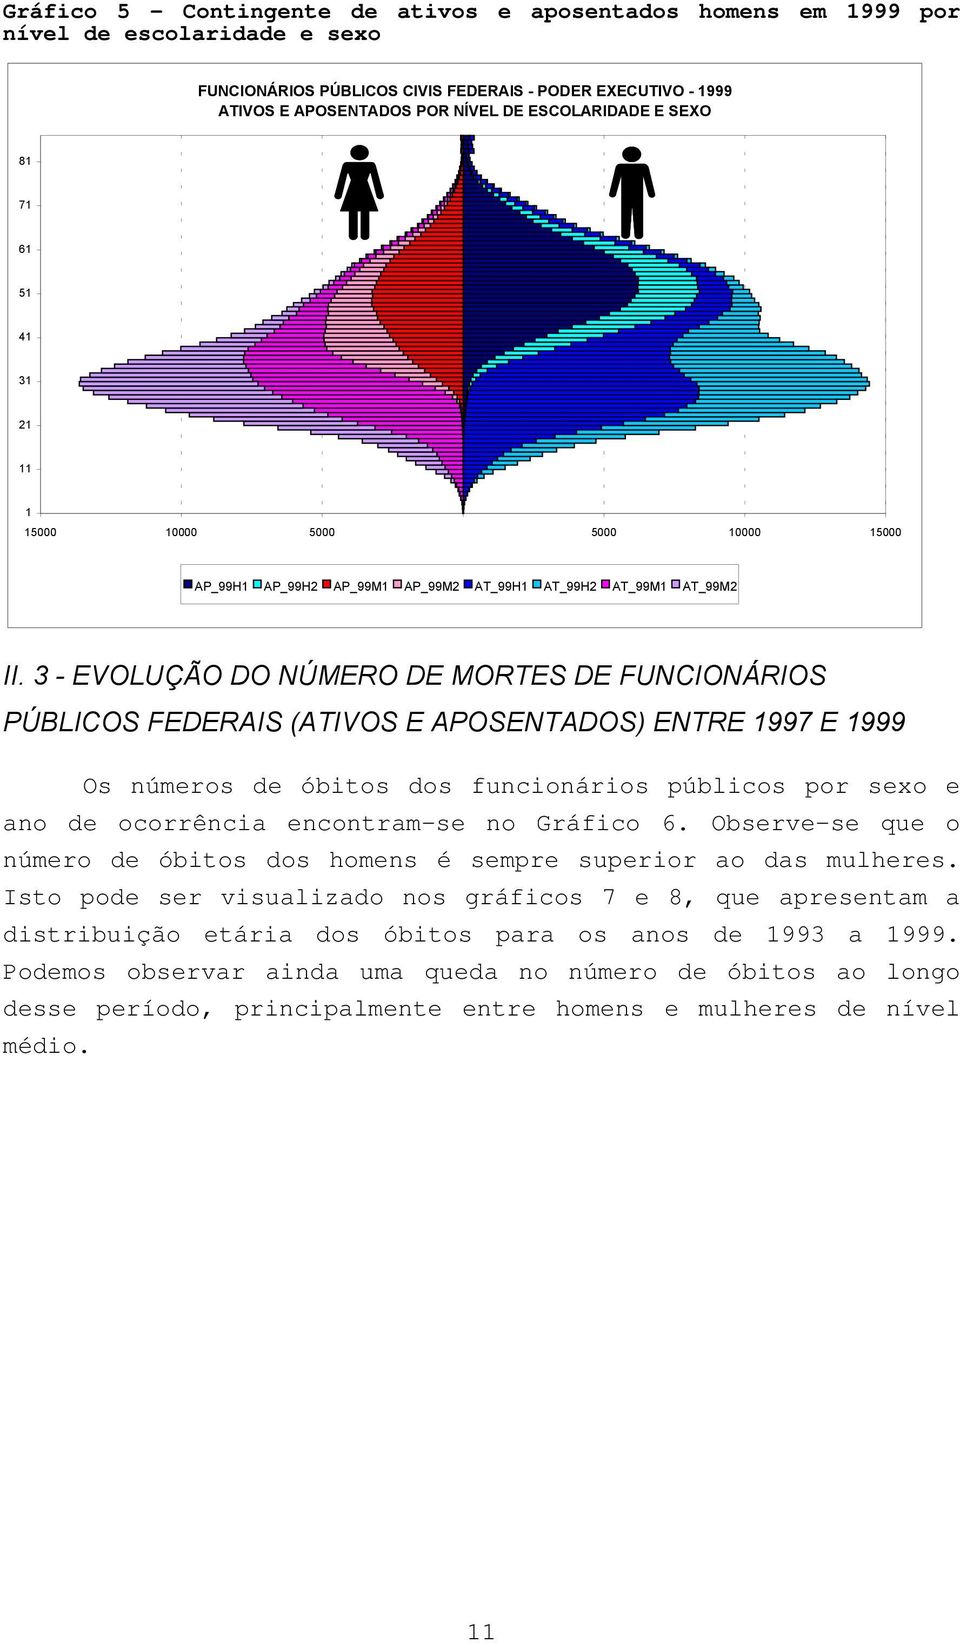 3 - EVOLUÇÃO DO NÚMERO DE MORTES DE FUNCIONÁRIOS PÚBLICOS FEDERAIS (ATIVOS E APOSENTADOS) ENTRE 1997 E 1999 Os números de óbitos dos funcionários públicos por sexo e ano de ocorrência encontram-se no